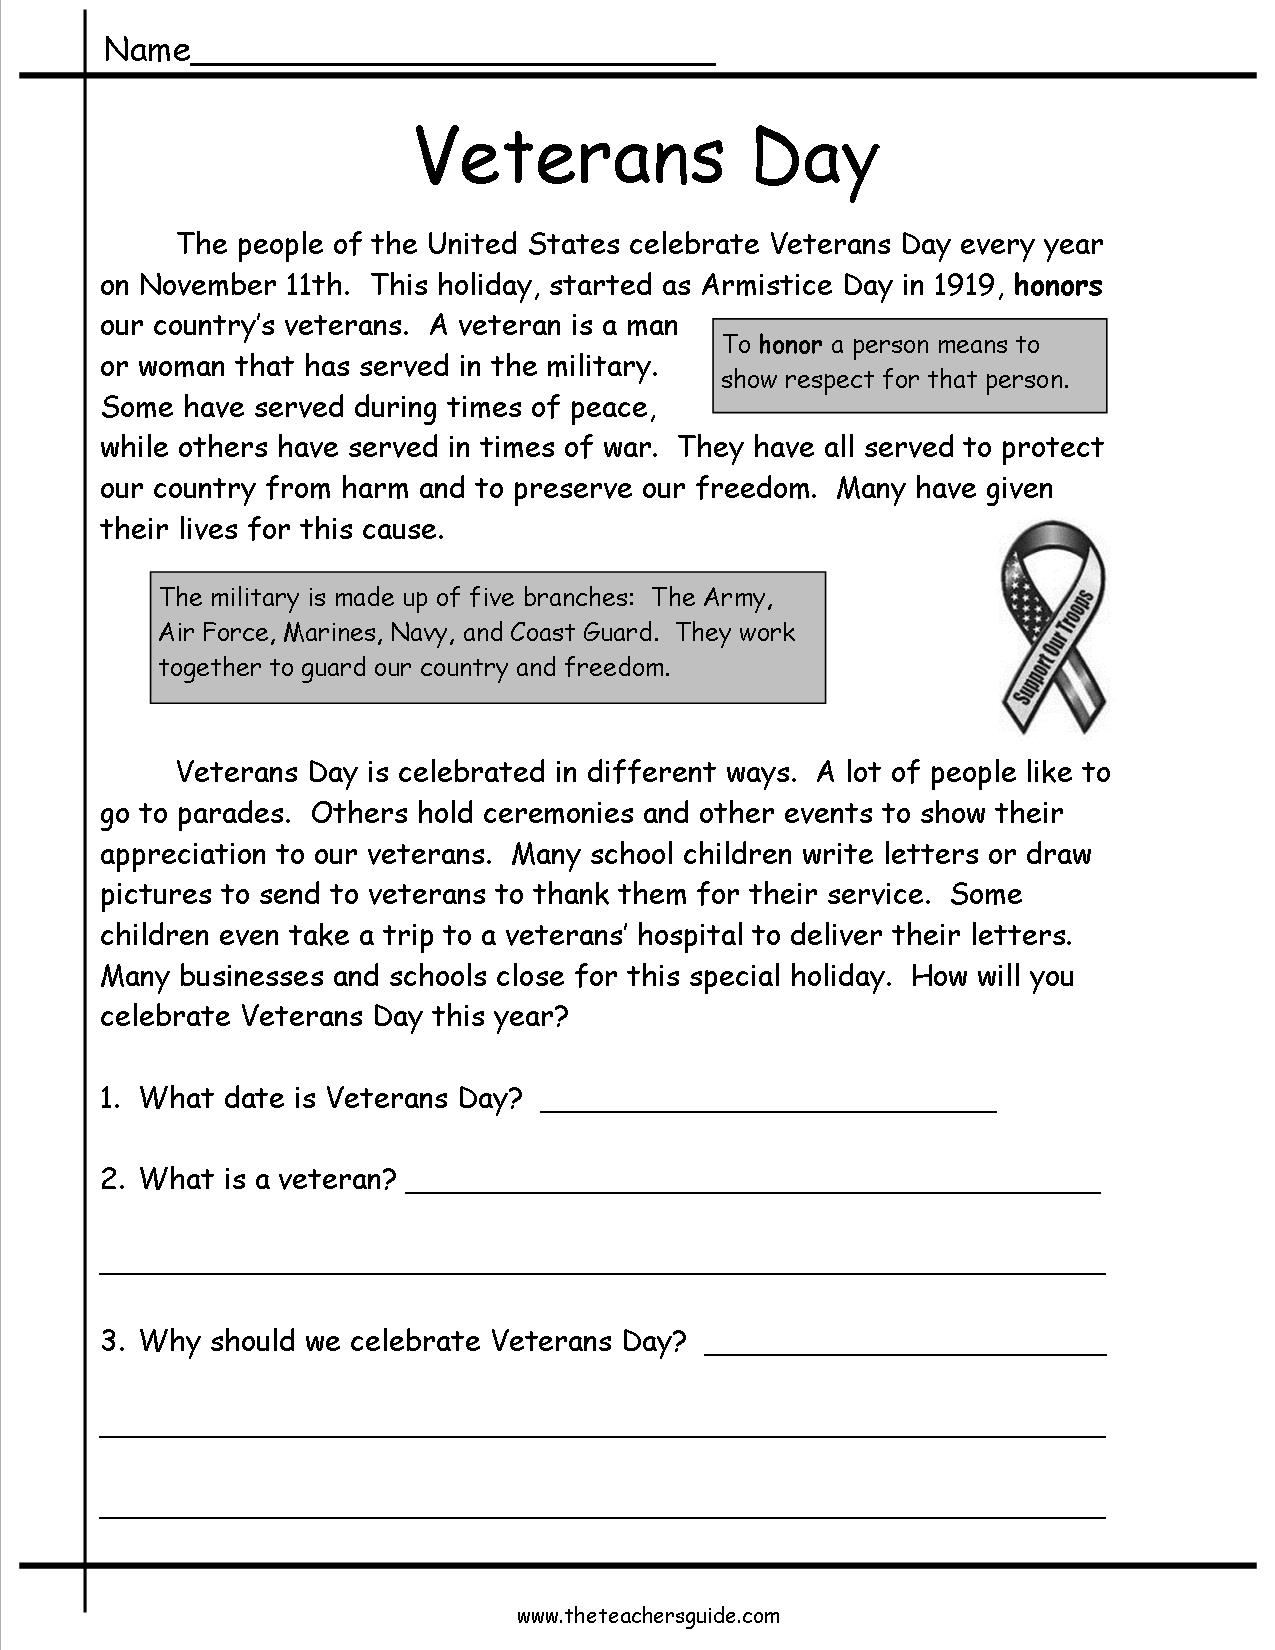 Veterans Day Program Clipart